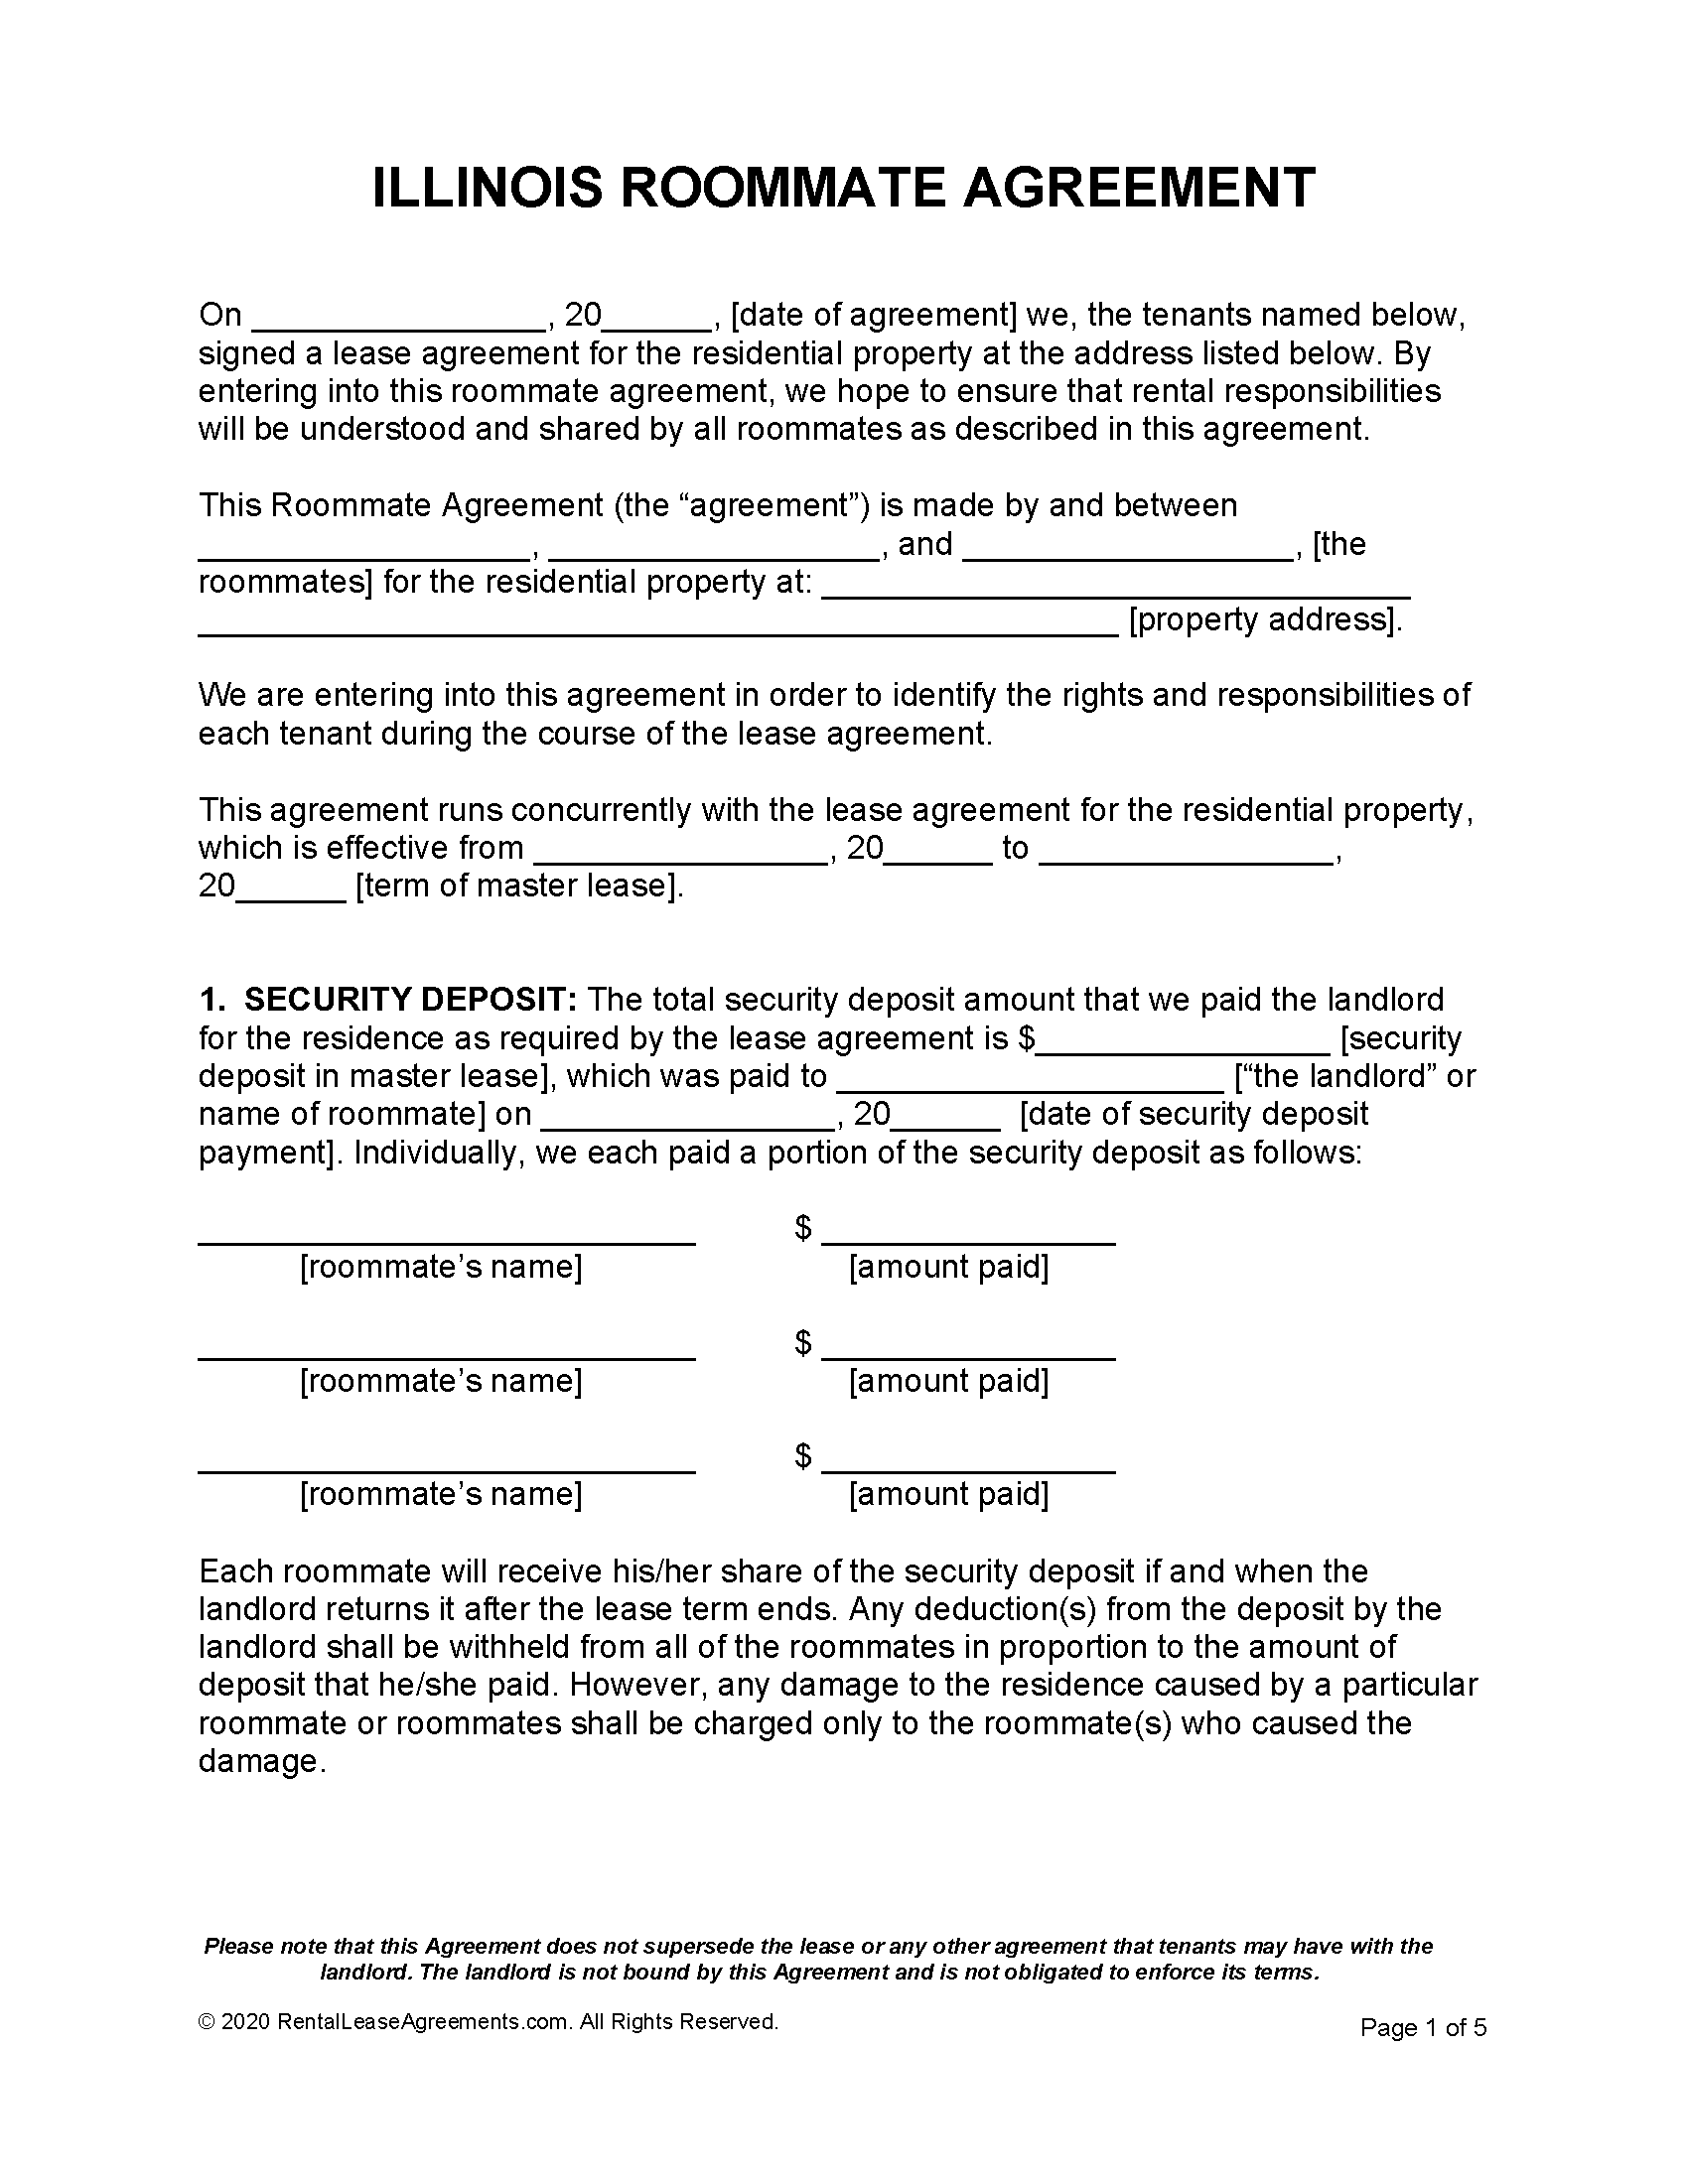 free-illinois-roommate-agreement-pdf-ms-word